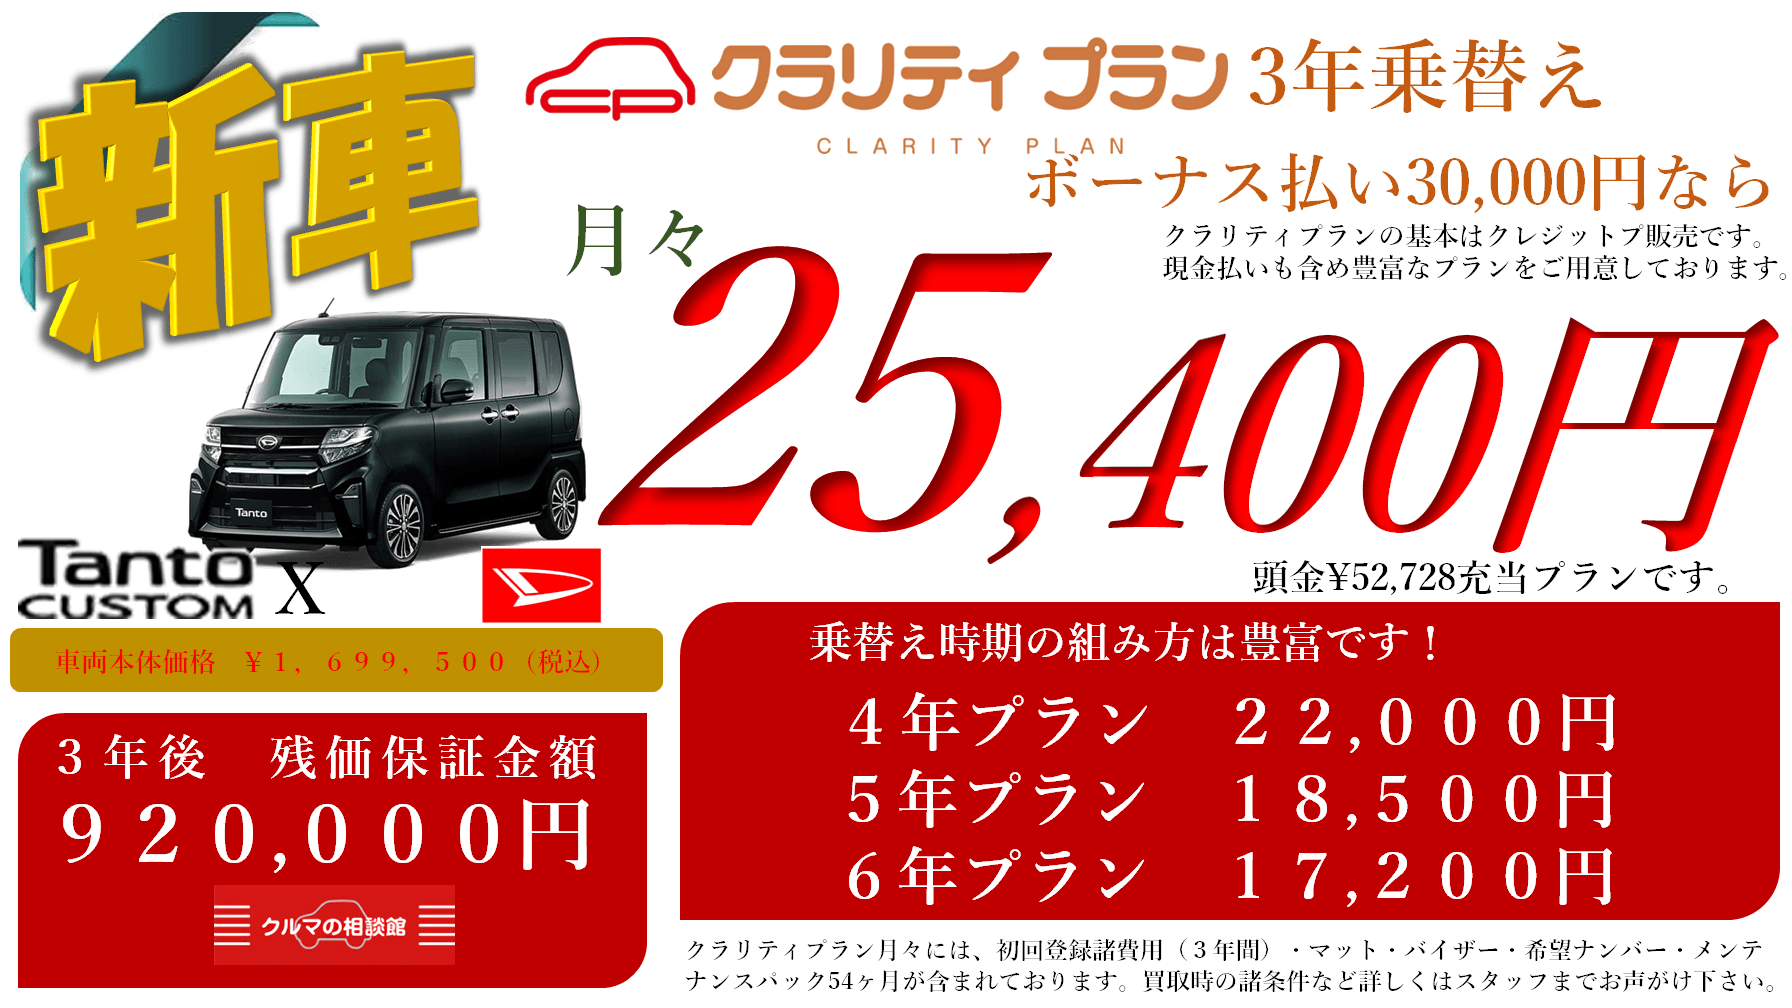 新車 Tanto CUSTOM X クラリティプラン3年乗替え ボーナス払い30,000円なら月々25,400円